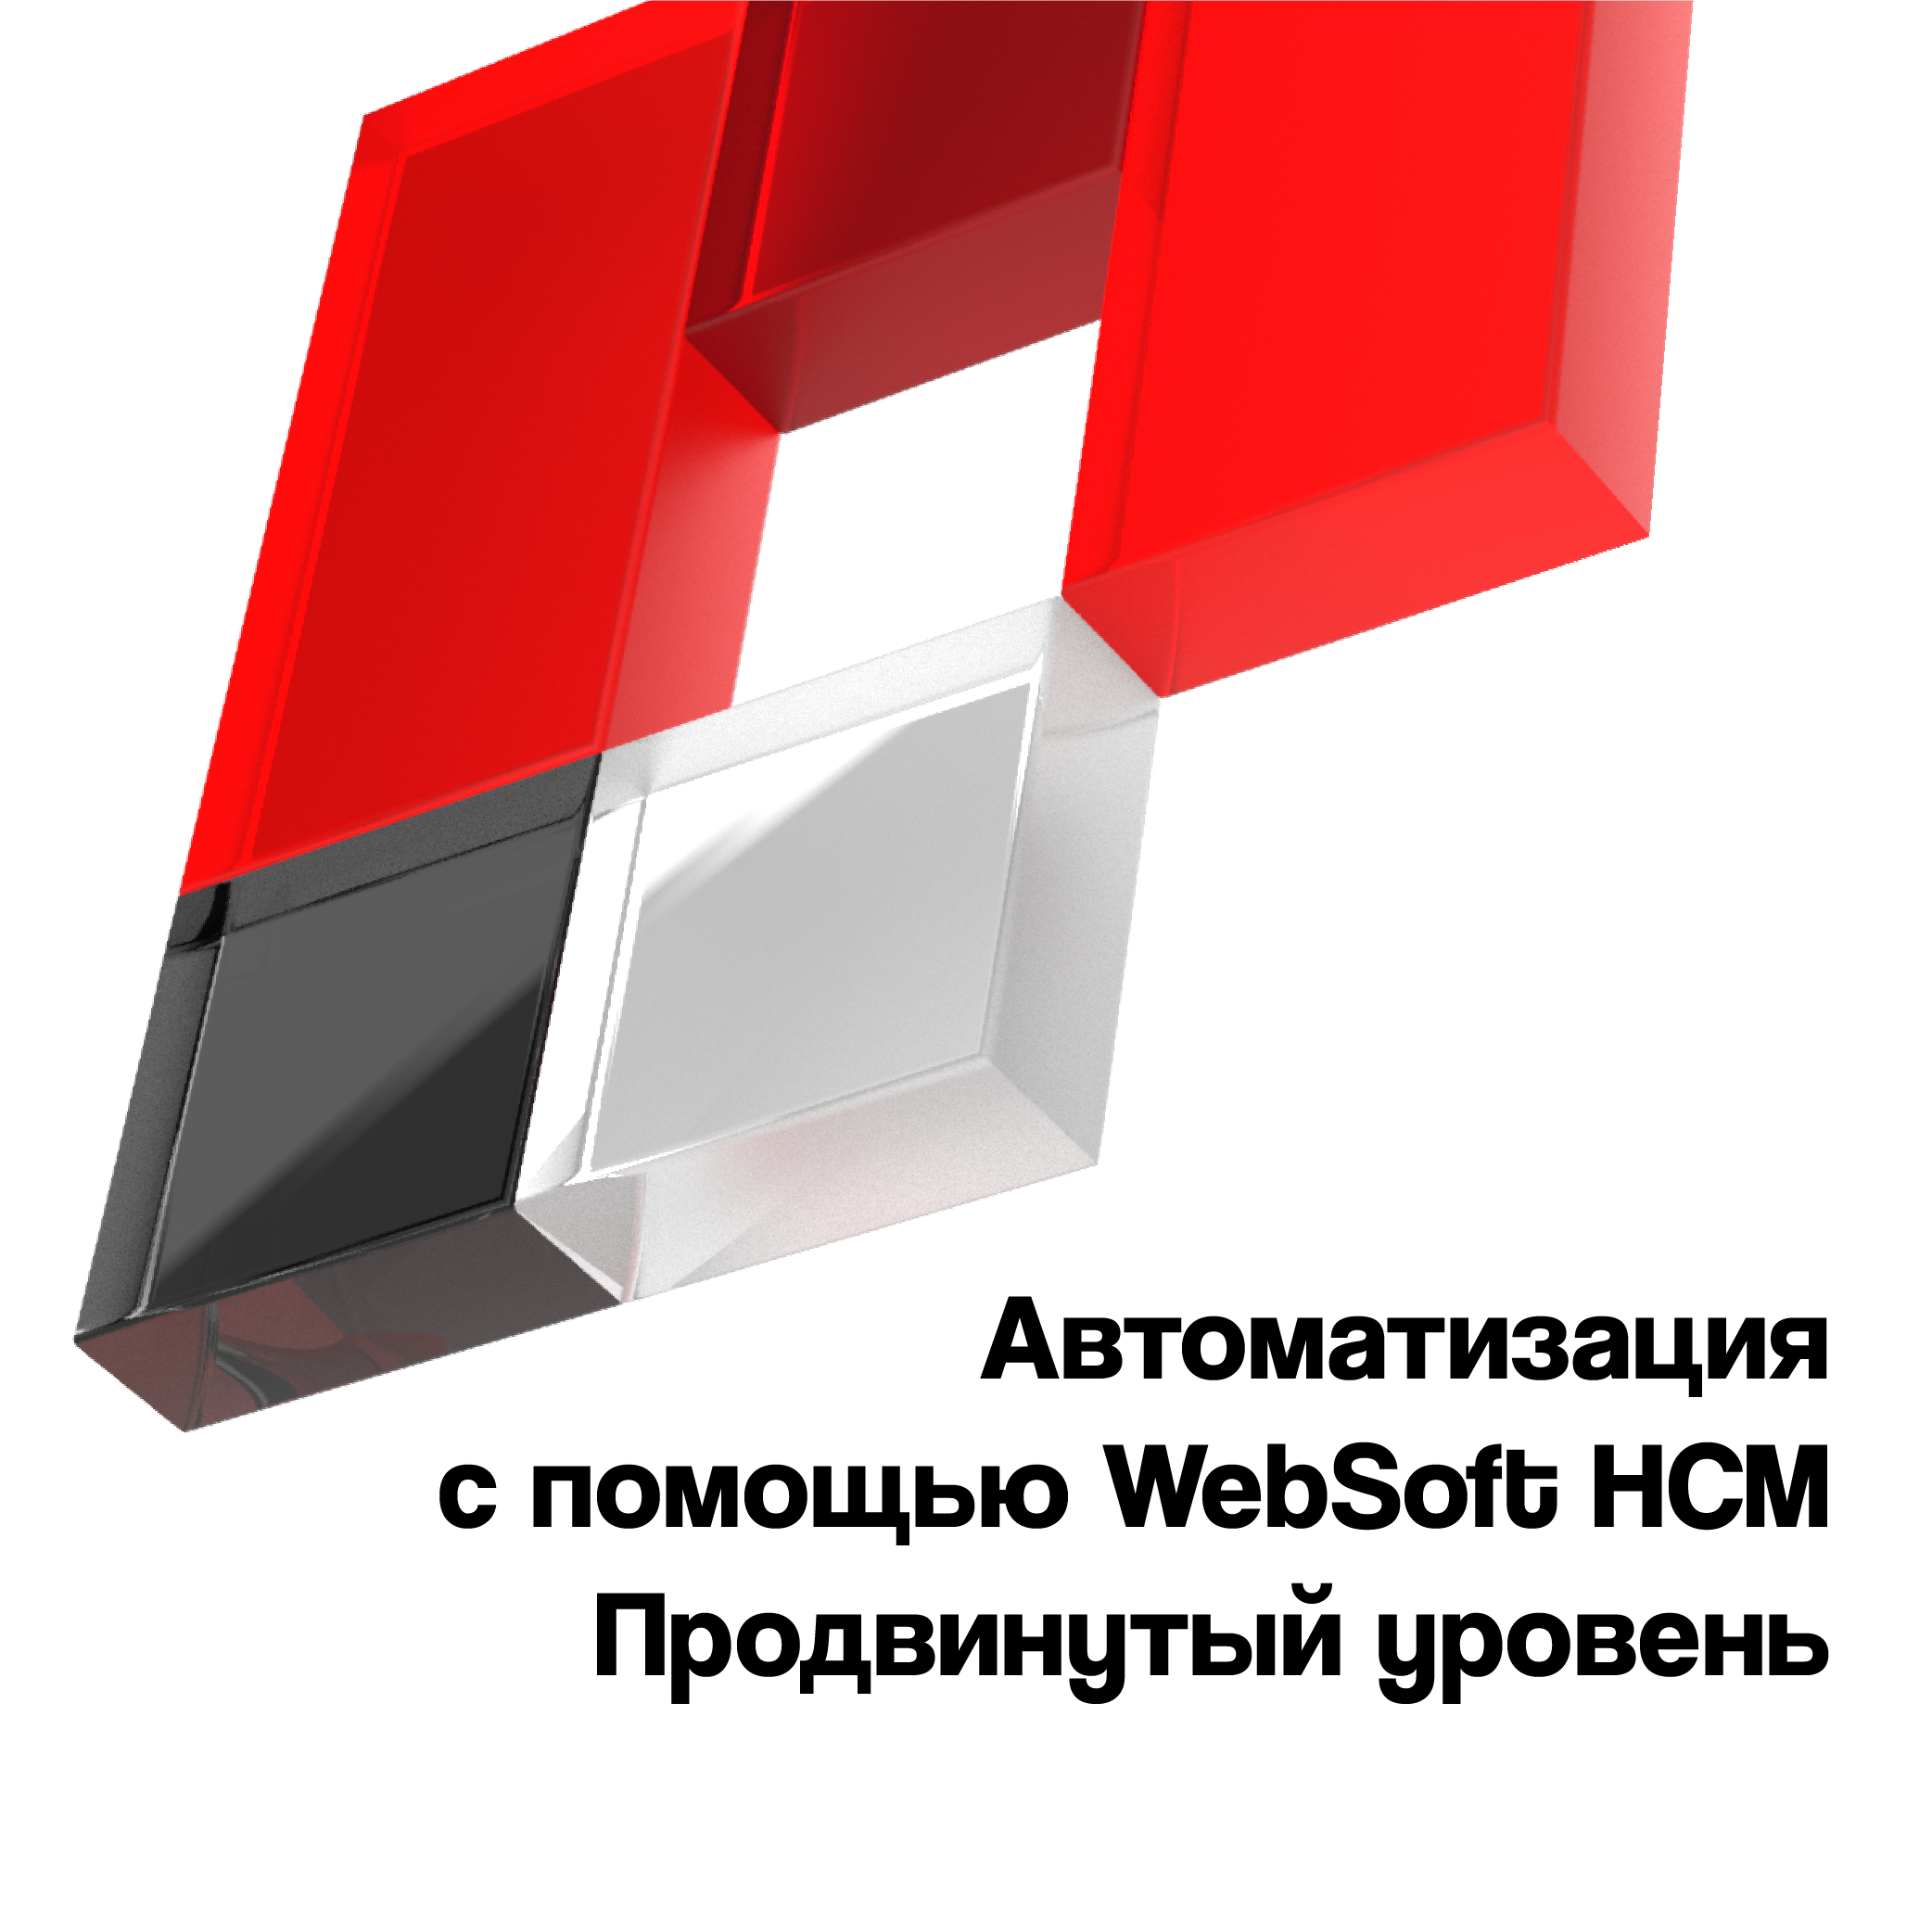 Автоматизация бизнес-процессов с помощью WebSoft HCM. Продвинутый уровень